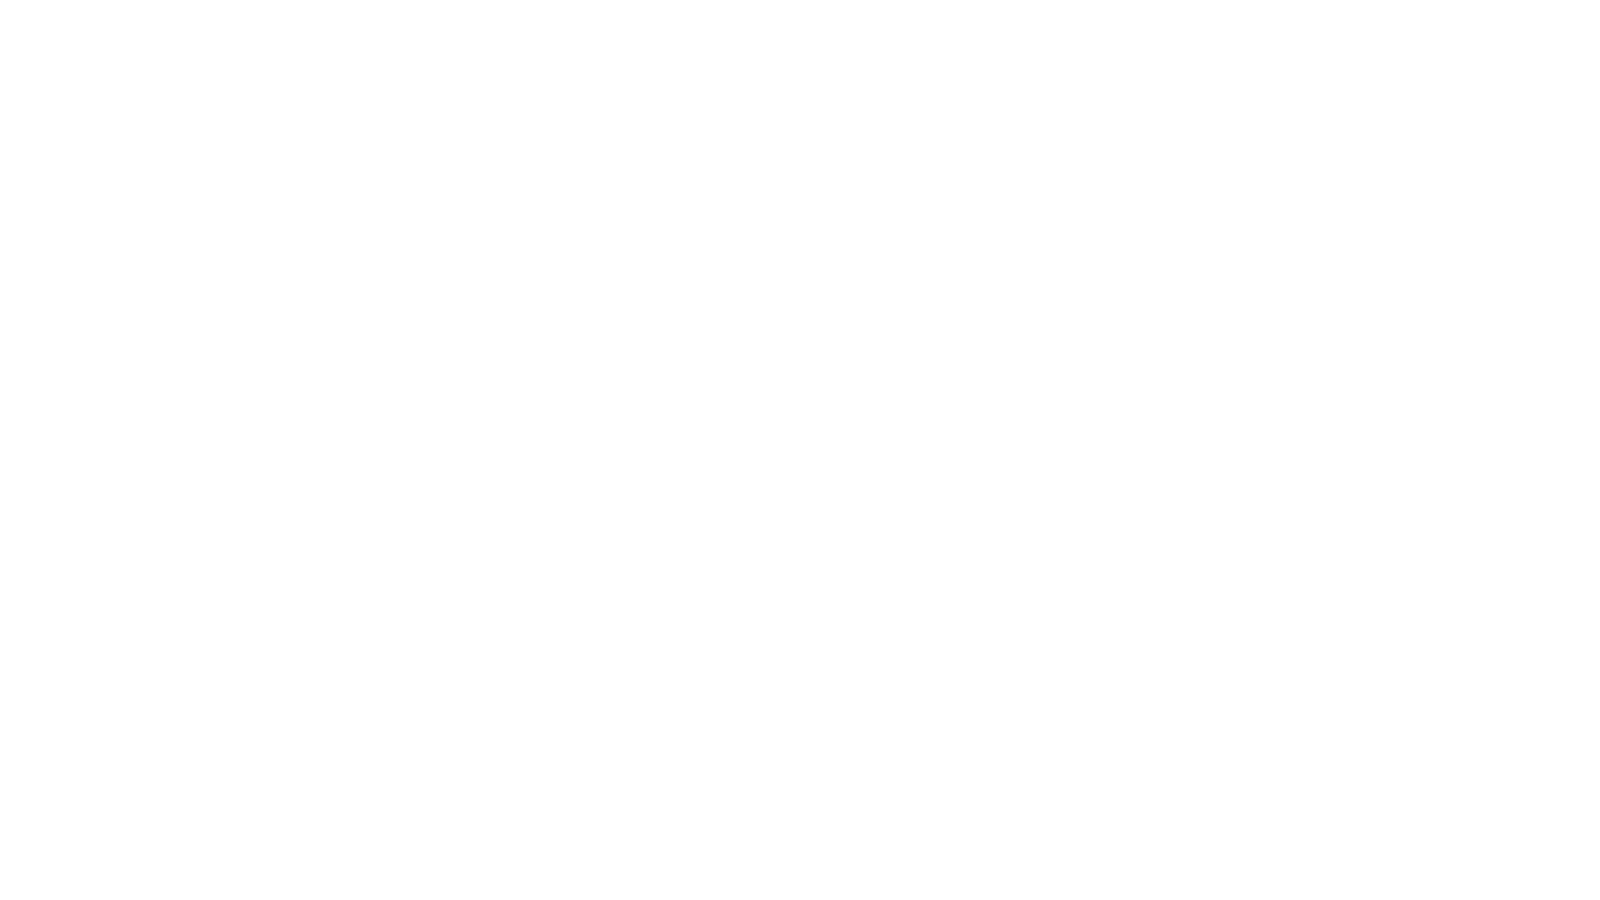 ياباني من الريف العميق قطع مئات الكيلومترات. اتصل بسفارة المغرب للاستفسار حول اجراءات دفن زوجته المغربية حسب الطقوس الإسلامية لتجنيبها الطقوس الجاري بها العمل في قريته.
Music: Dramatic Story
Musician: Lightning Traveler
URL: https://pixabay.com